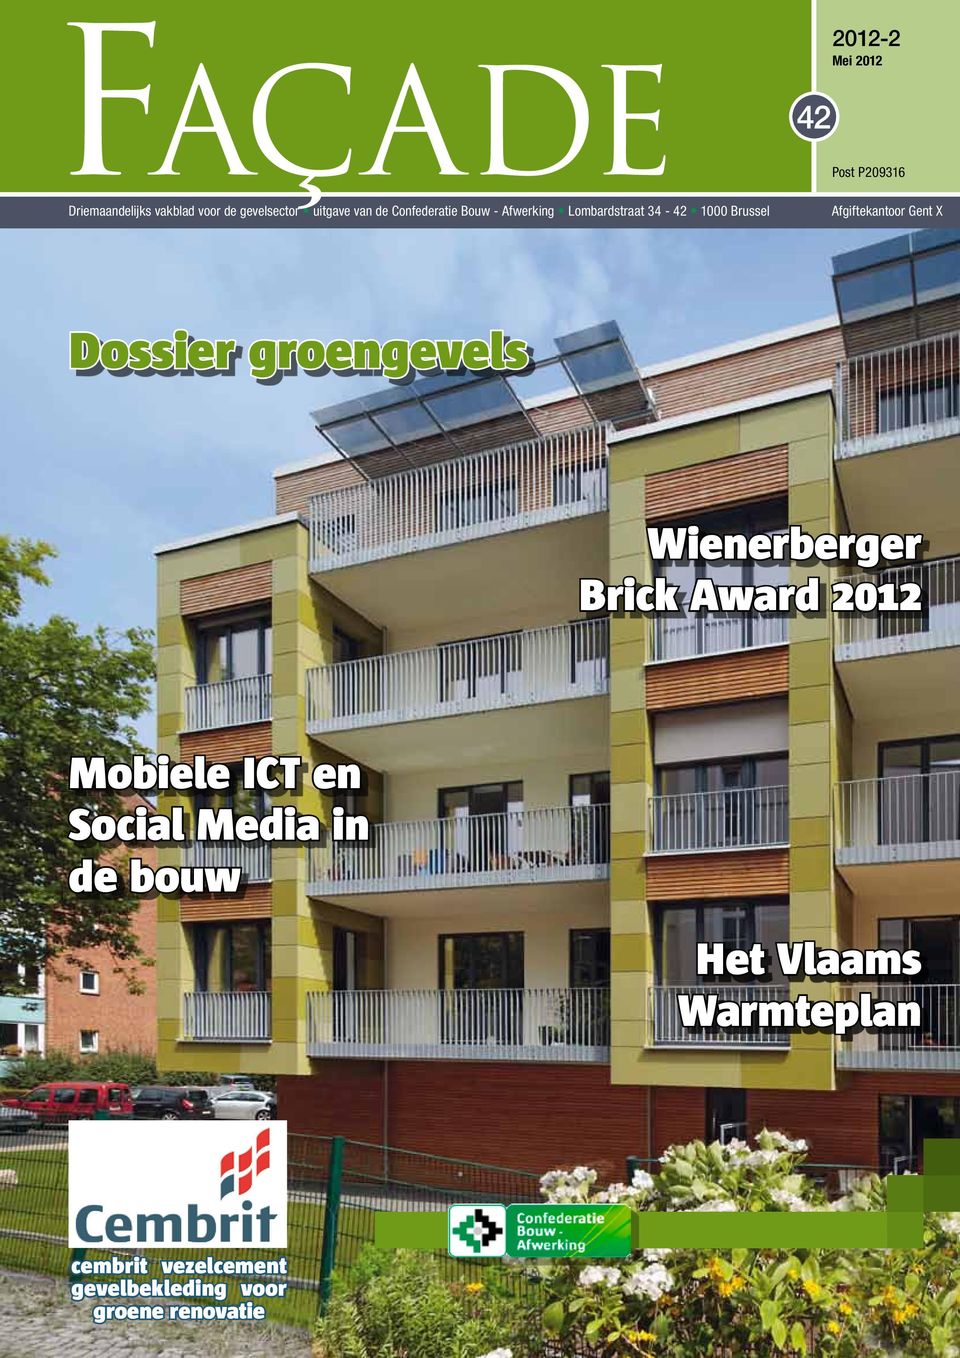 Afgiftekantoor Gent X Dossier groengevels Wienerberger Brick Award 2012 Mobiele ICT en